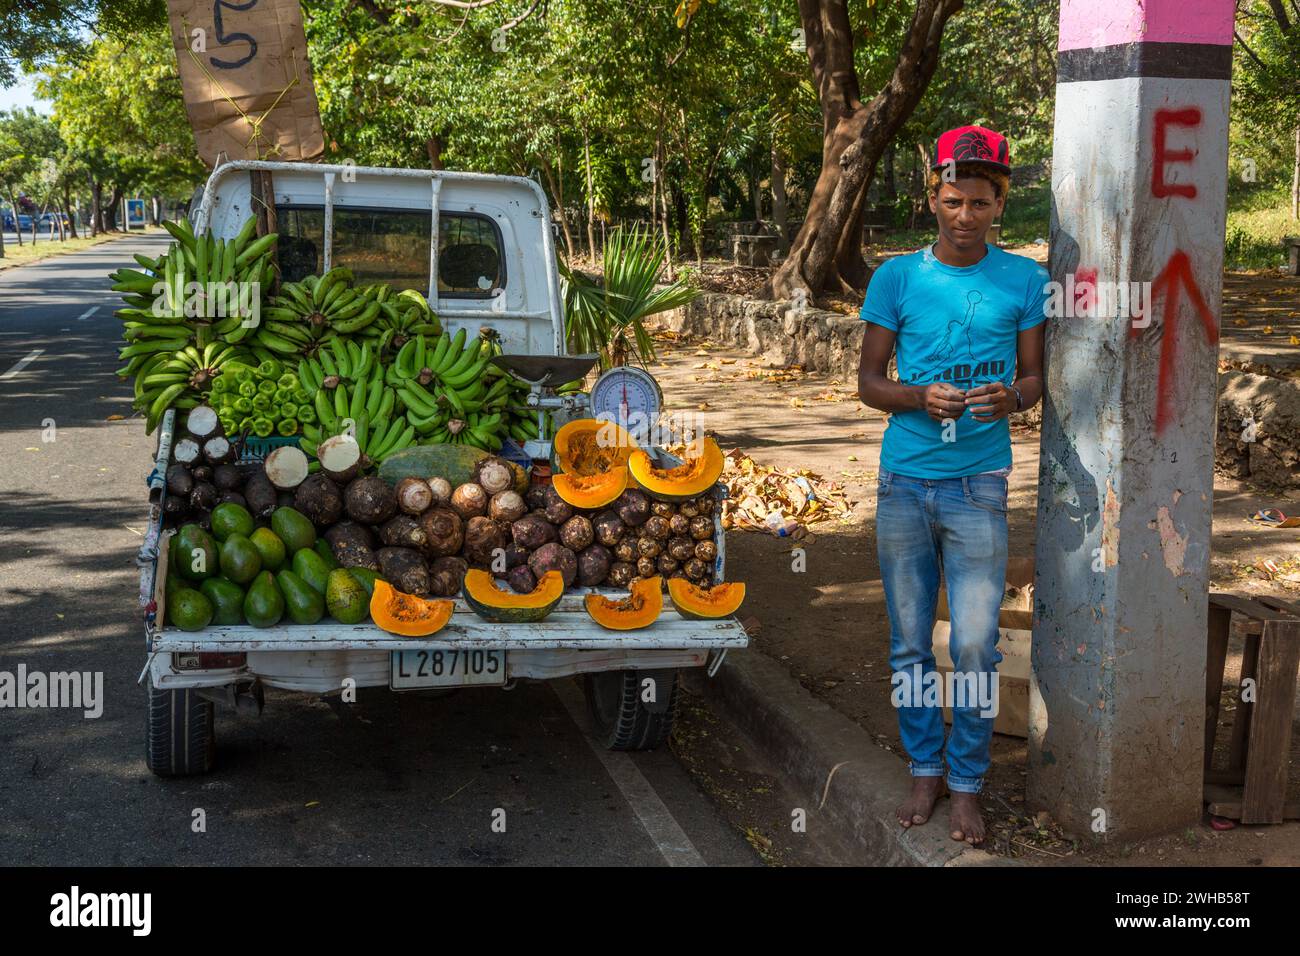 Dieser Lkw ist ein mobiler Stand für Produkte, der an einer belebten Straße in Santo Domingo, Dominikanische Republik, parkt. Stockfoto